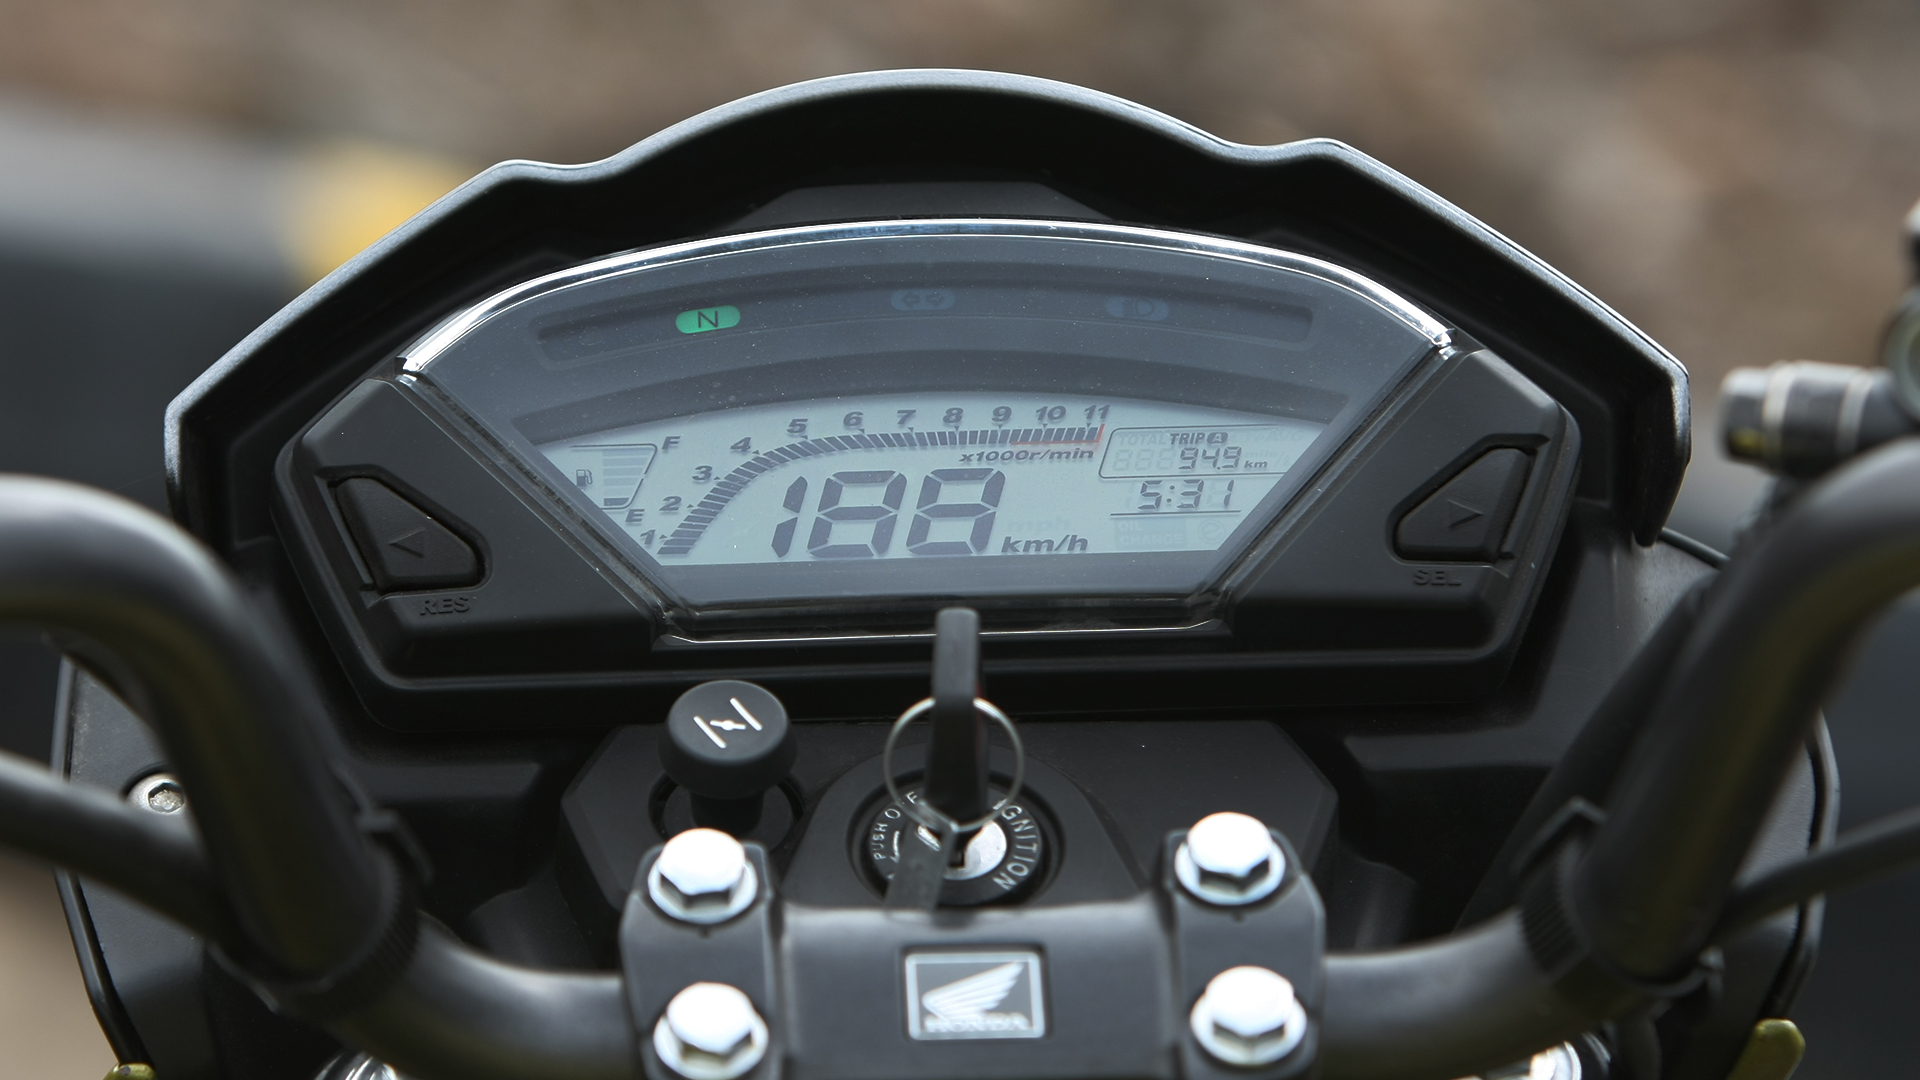 Honda CB Trigger 2013 Compare